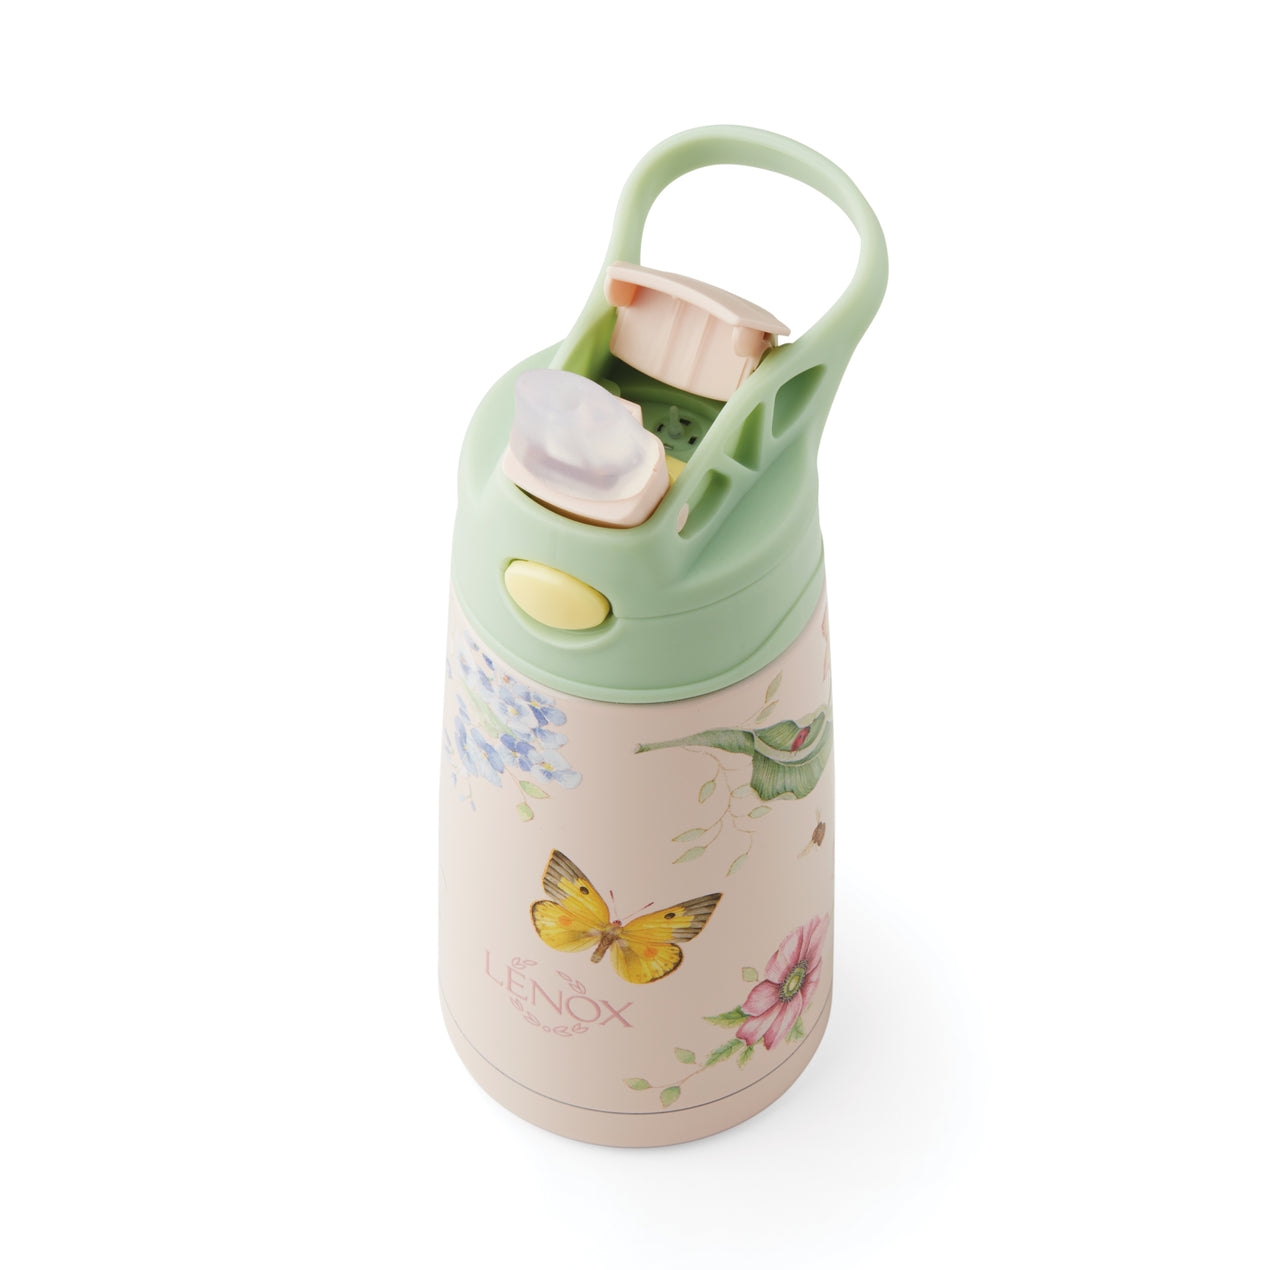 Lenox 895746 Butterfly Meadow Pink Stainless Steel Kids Water Bottle